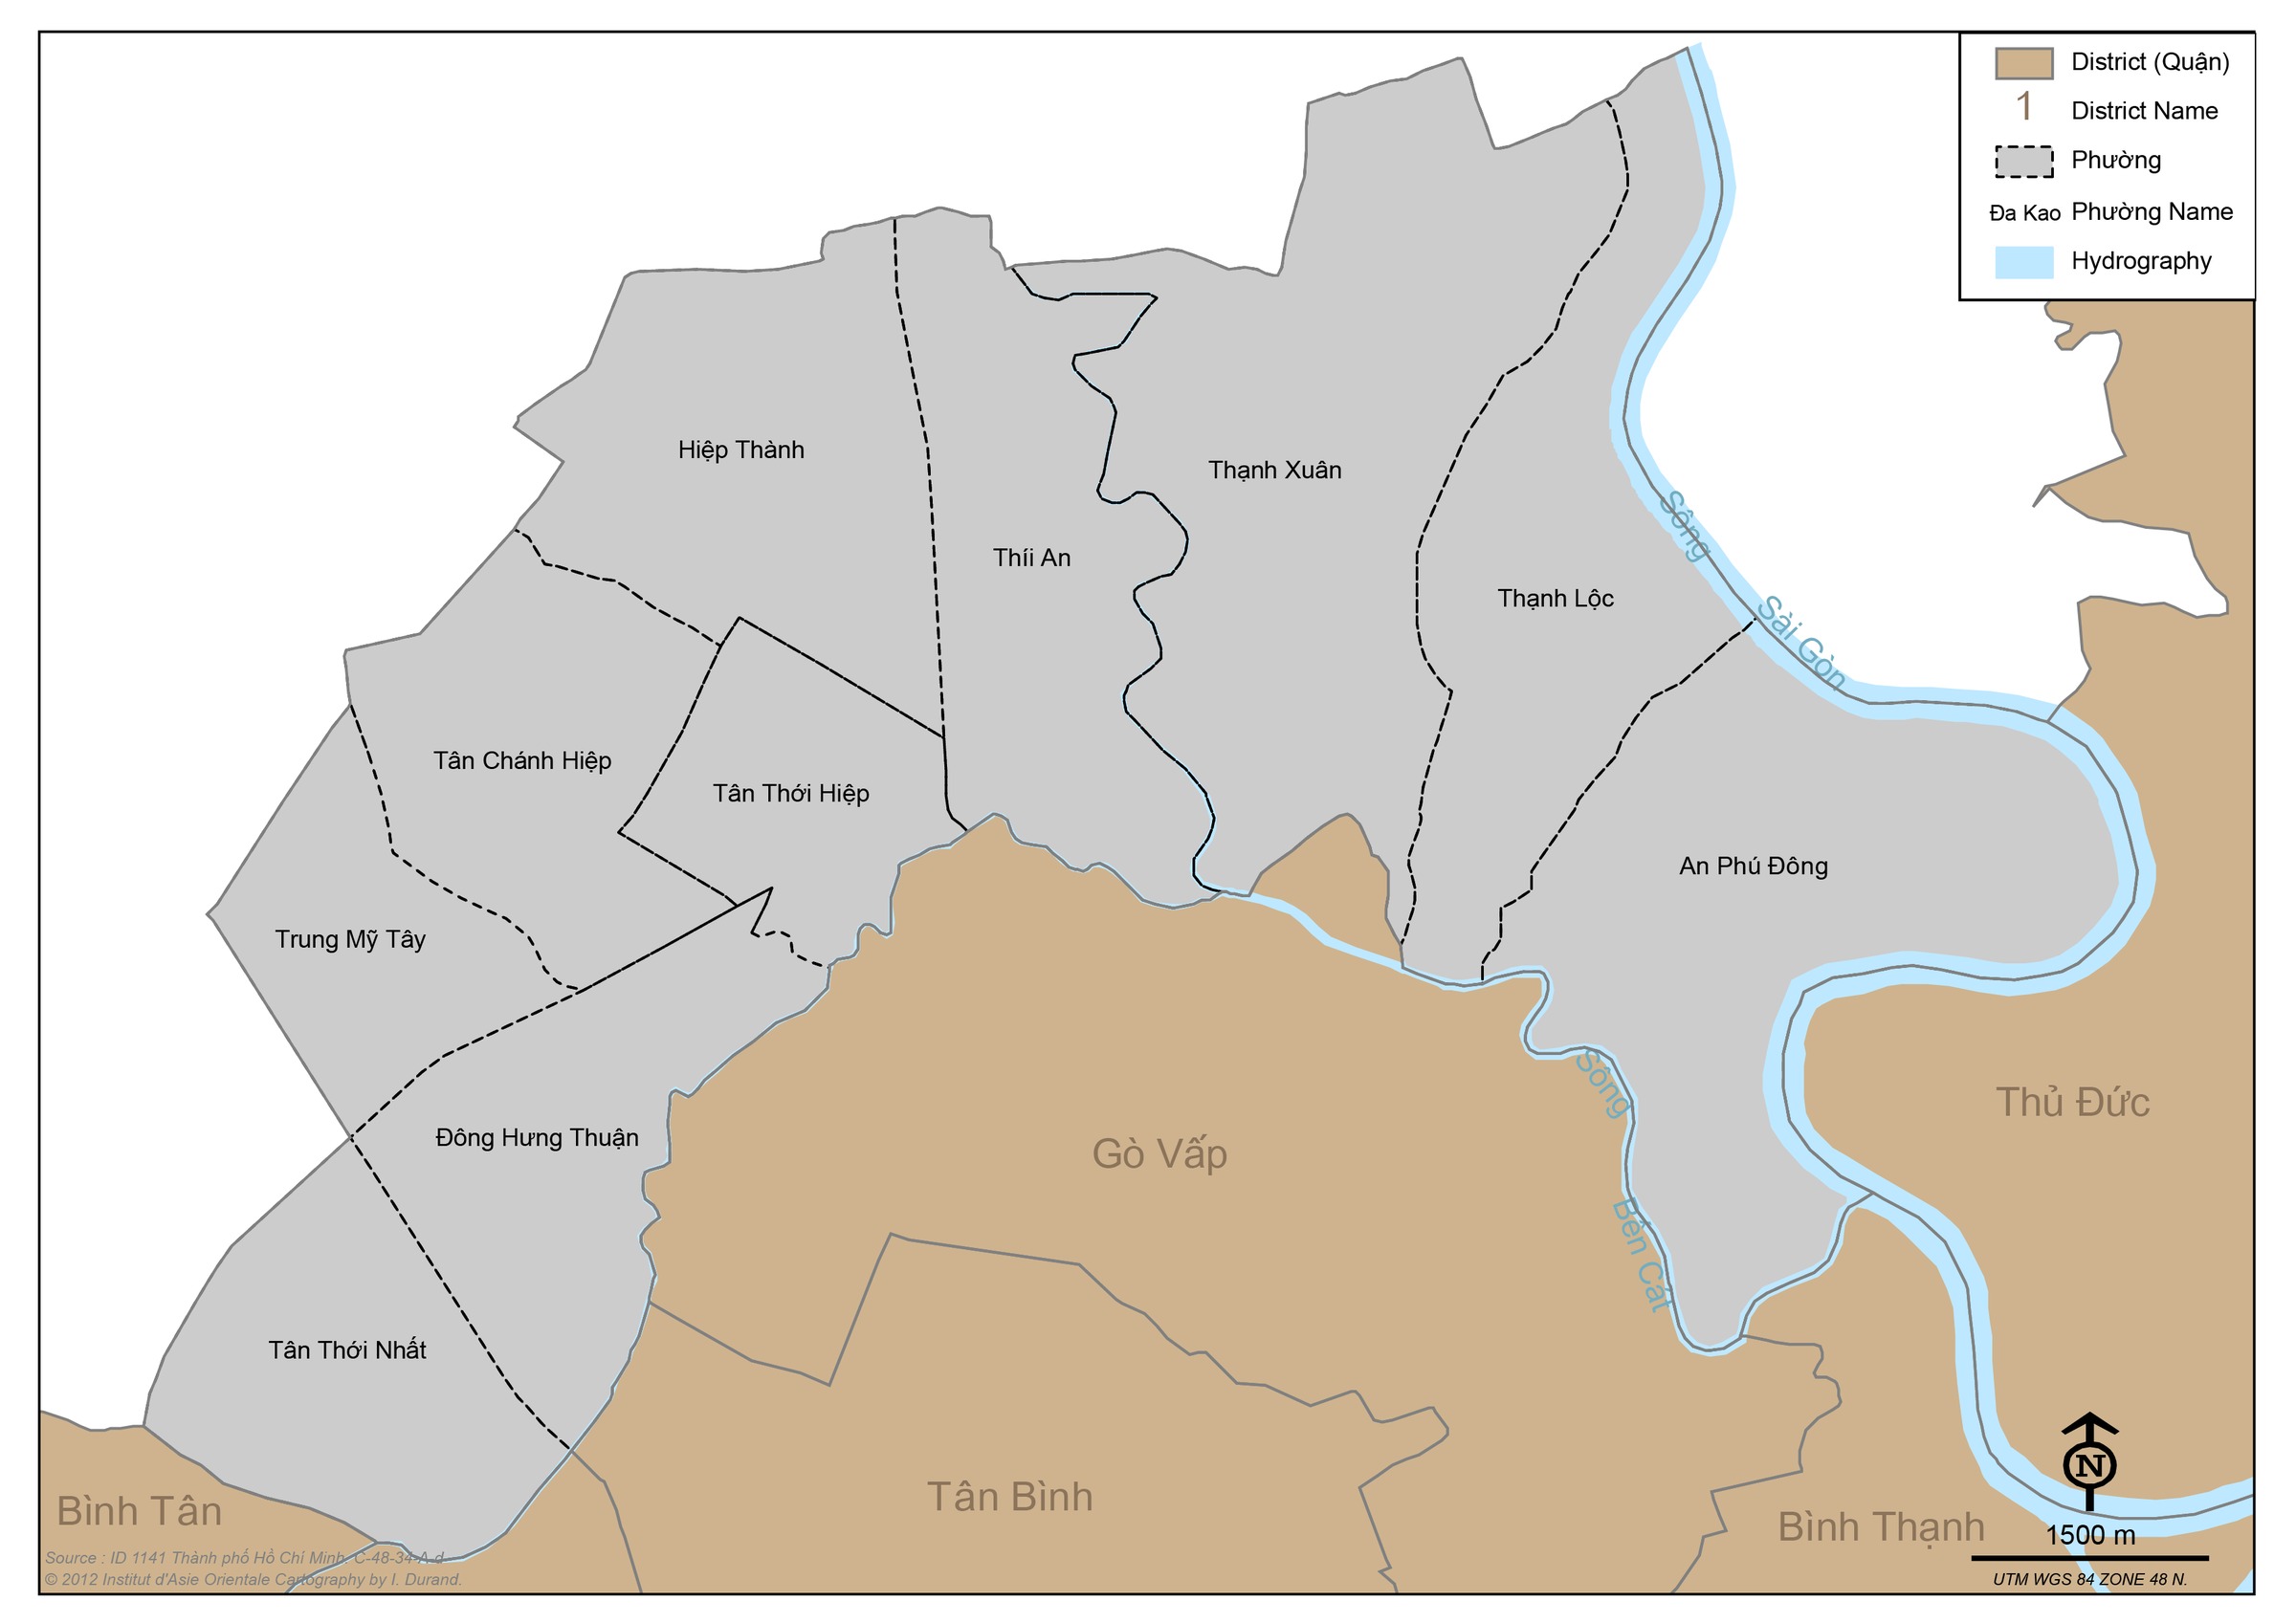 Bản đồ quận Bình Tân TP HCM mang đến cho bạn những cập nhật mới nhất về các khu vực mới như Phường Tân Tạo A, B, C với hệ thống giao thông thông minh, các địa điểm vui chơi giải trí và hàng loạt tiện ích khác đáp ứng mọi nhu cầu của người dân.